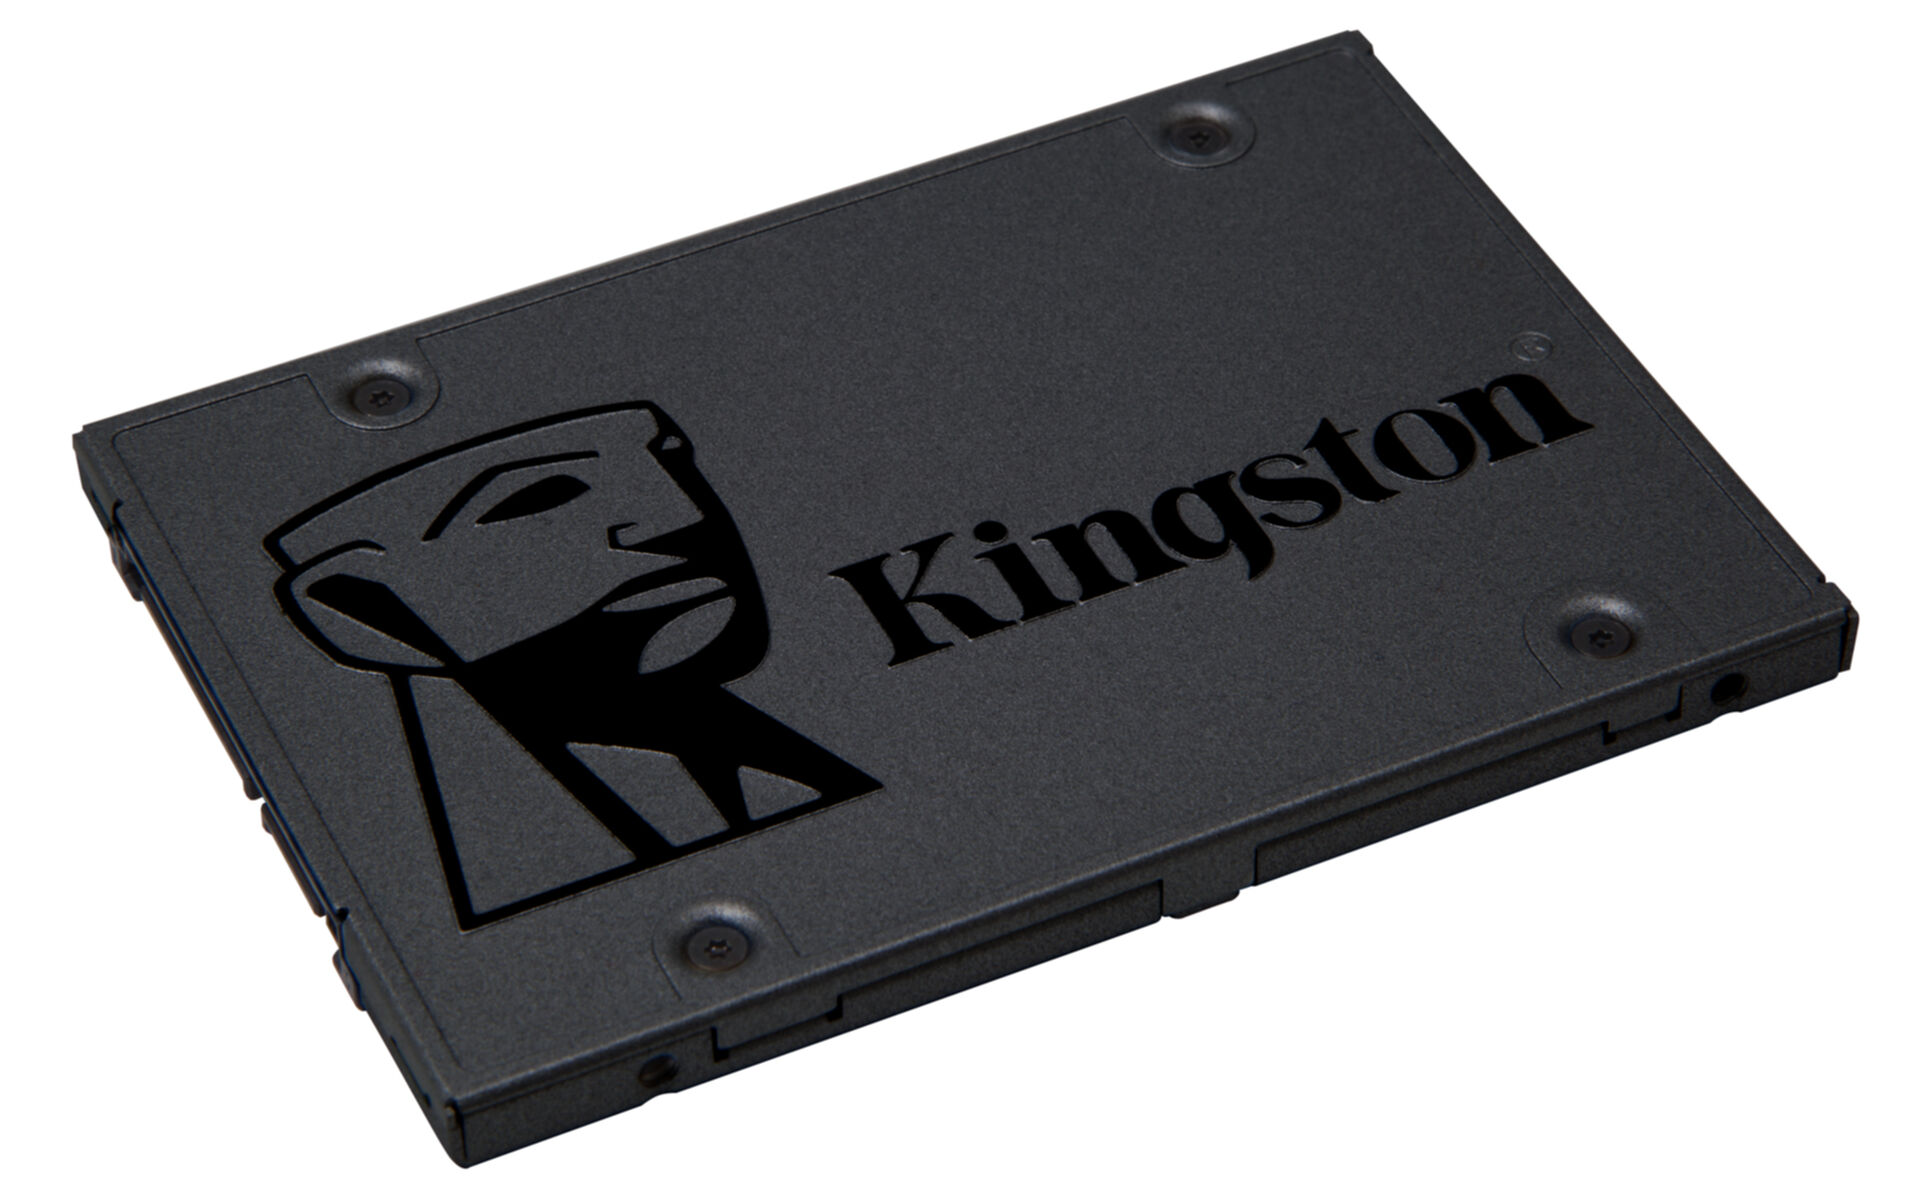 KINGSTON A400, 240 GB, SSD, Zoll, 2,5 intern